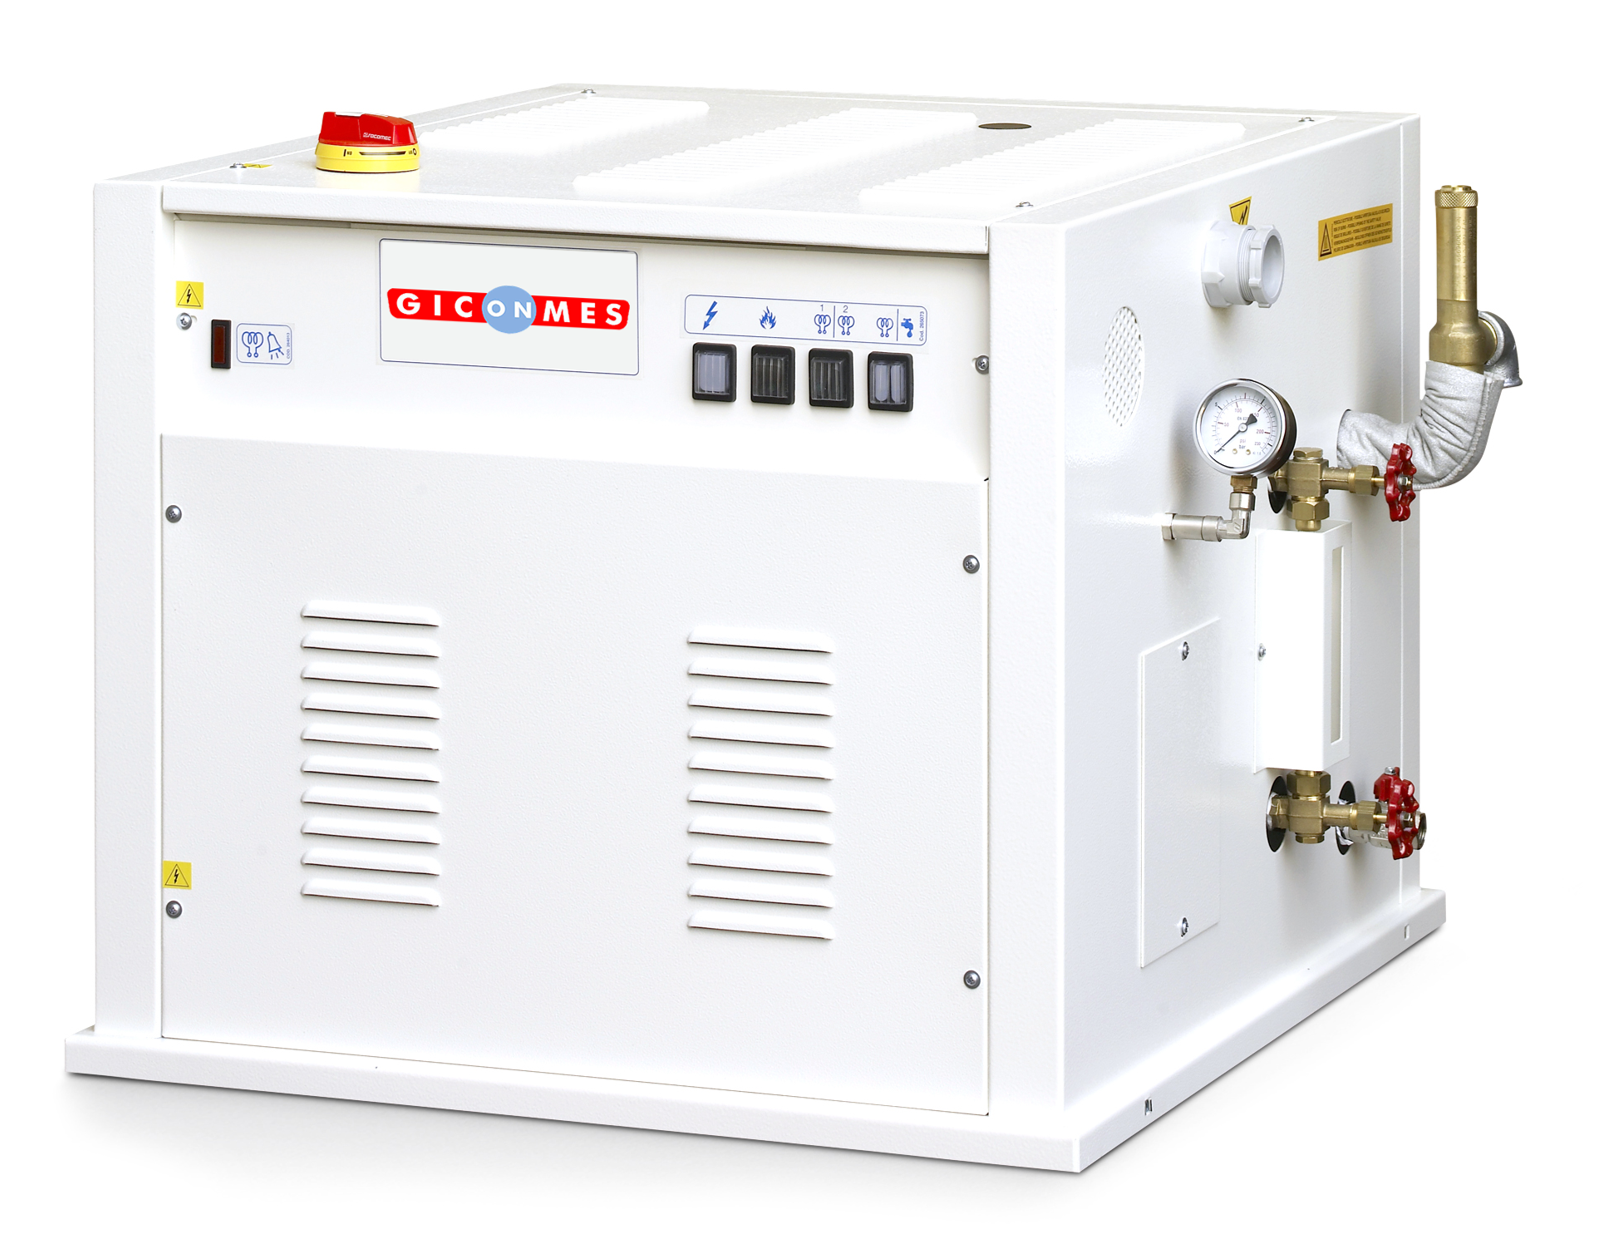 Generador vapor NGV 60 NGV6060 Correct size. Generadores de vapor industrial Giconmes